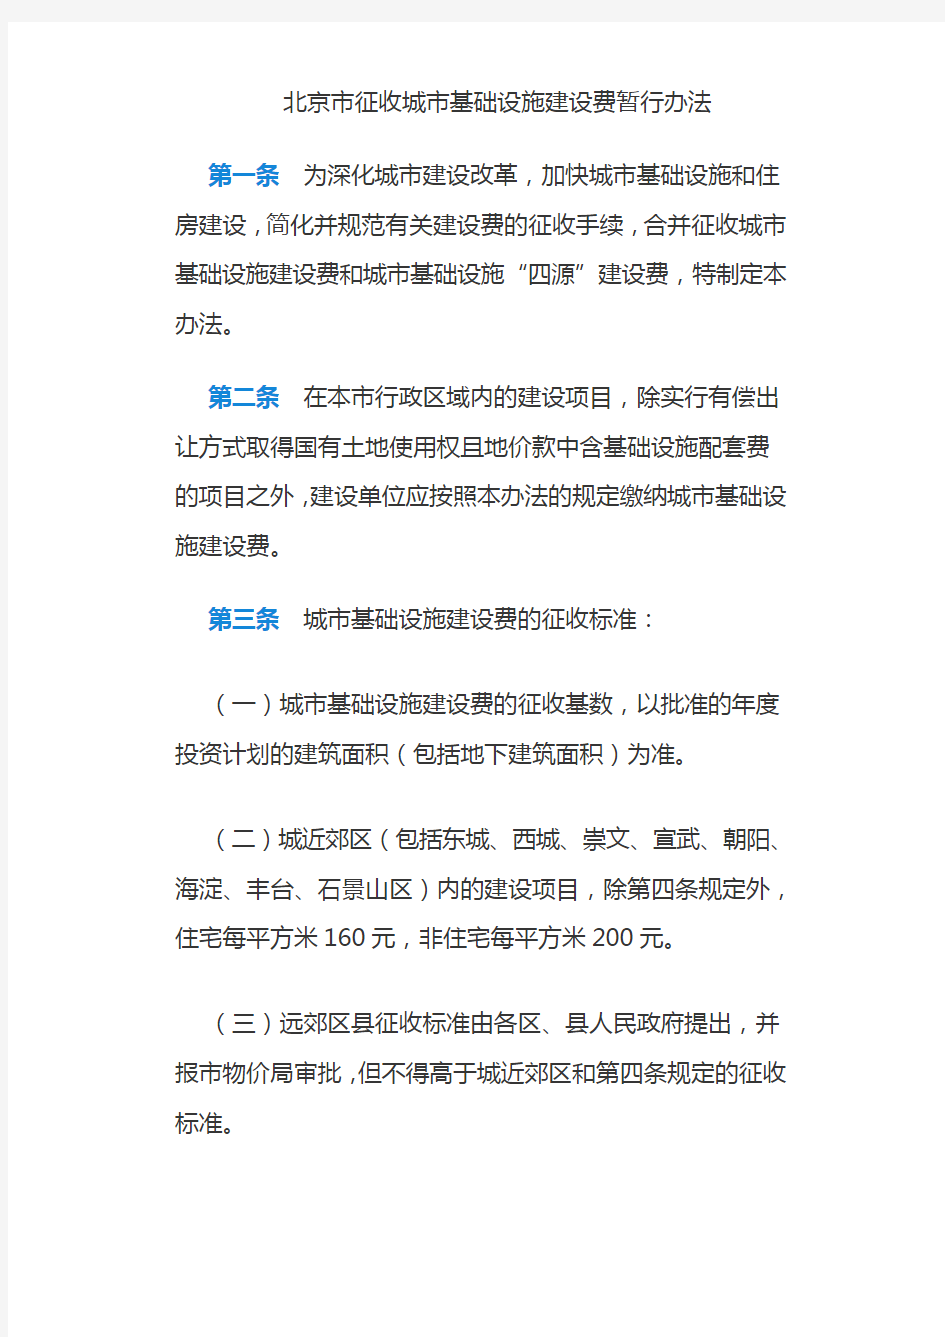 北京市发展计划委员会关于印发《北京市征收城市基础设施建设费暂行办法》的通知